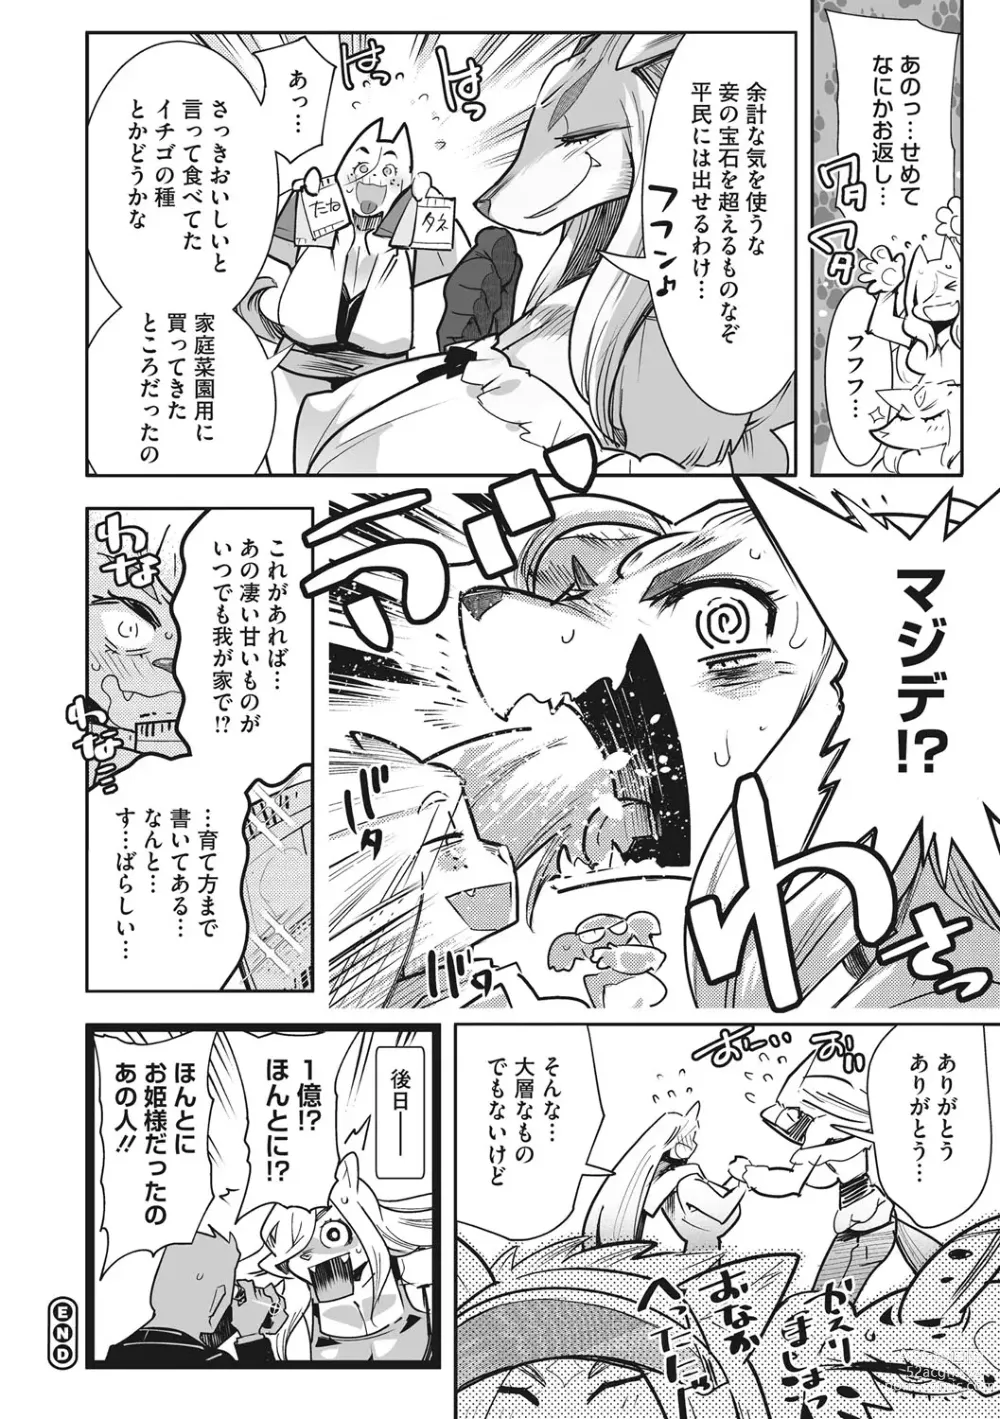 Page 233 of manga Kemono to Koishite Nani ga Warui!